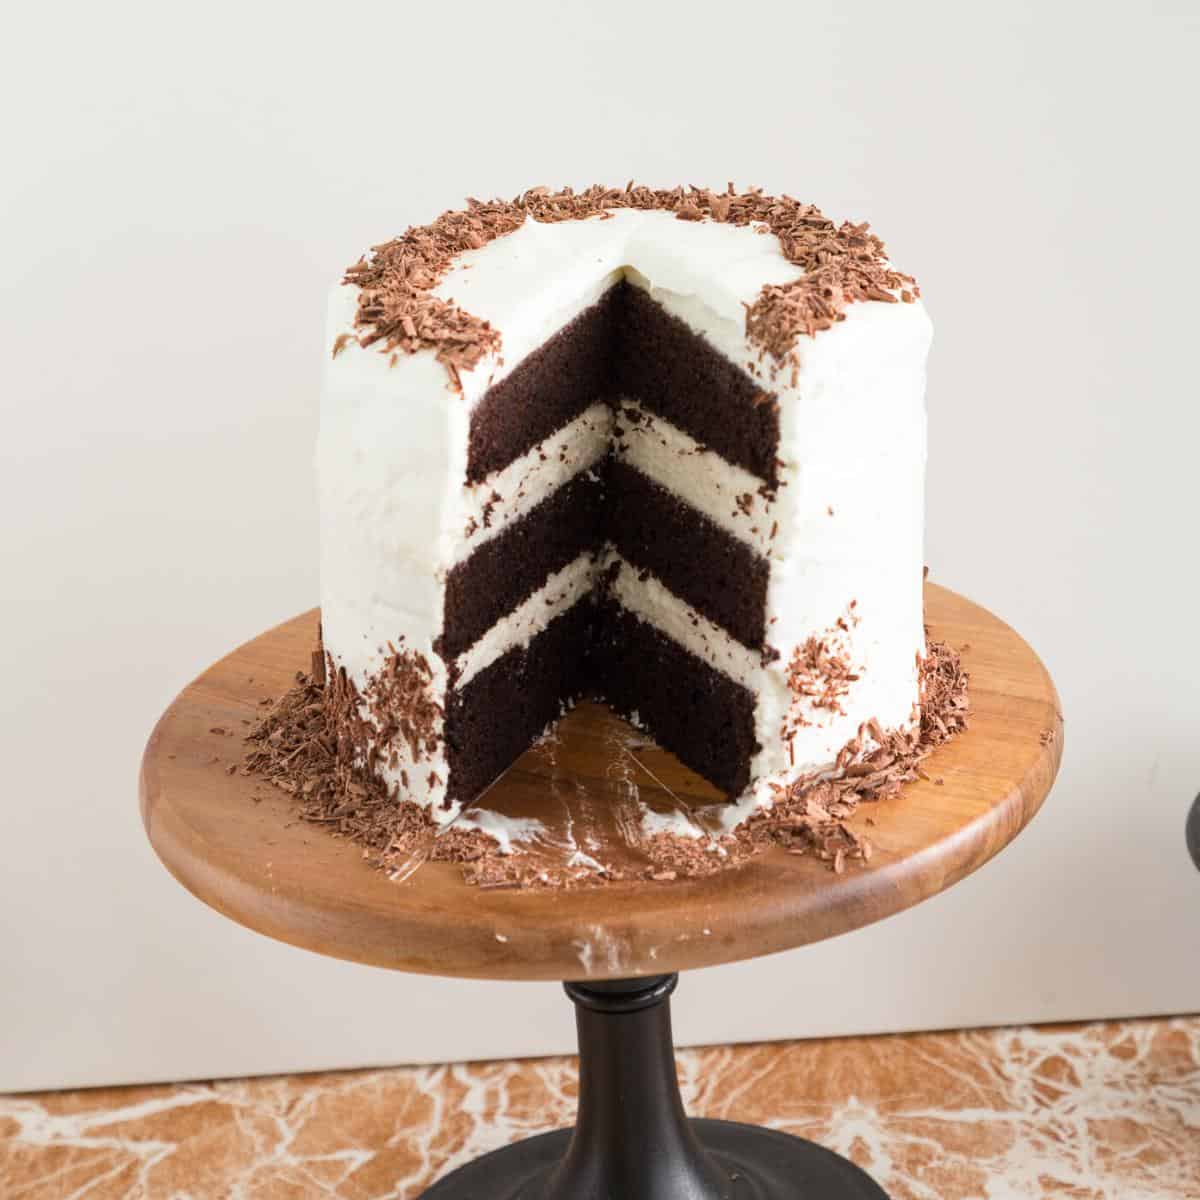 A sliced chocolate cake.